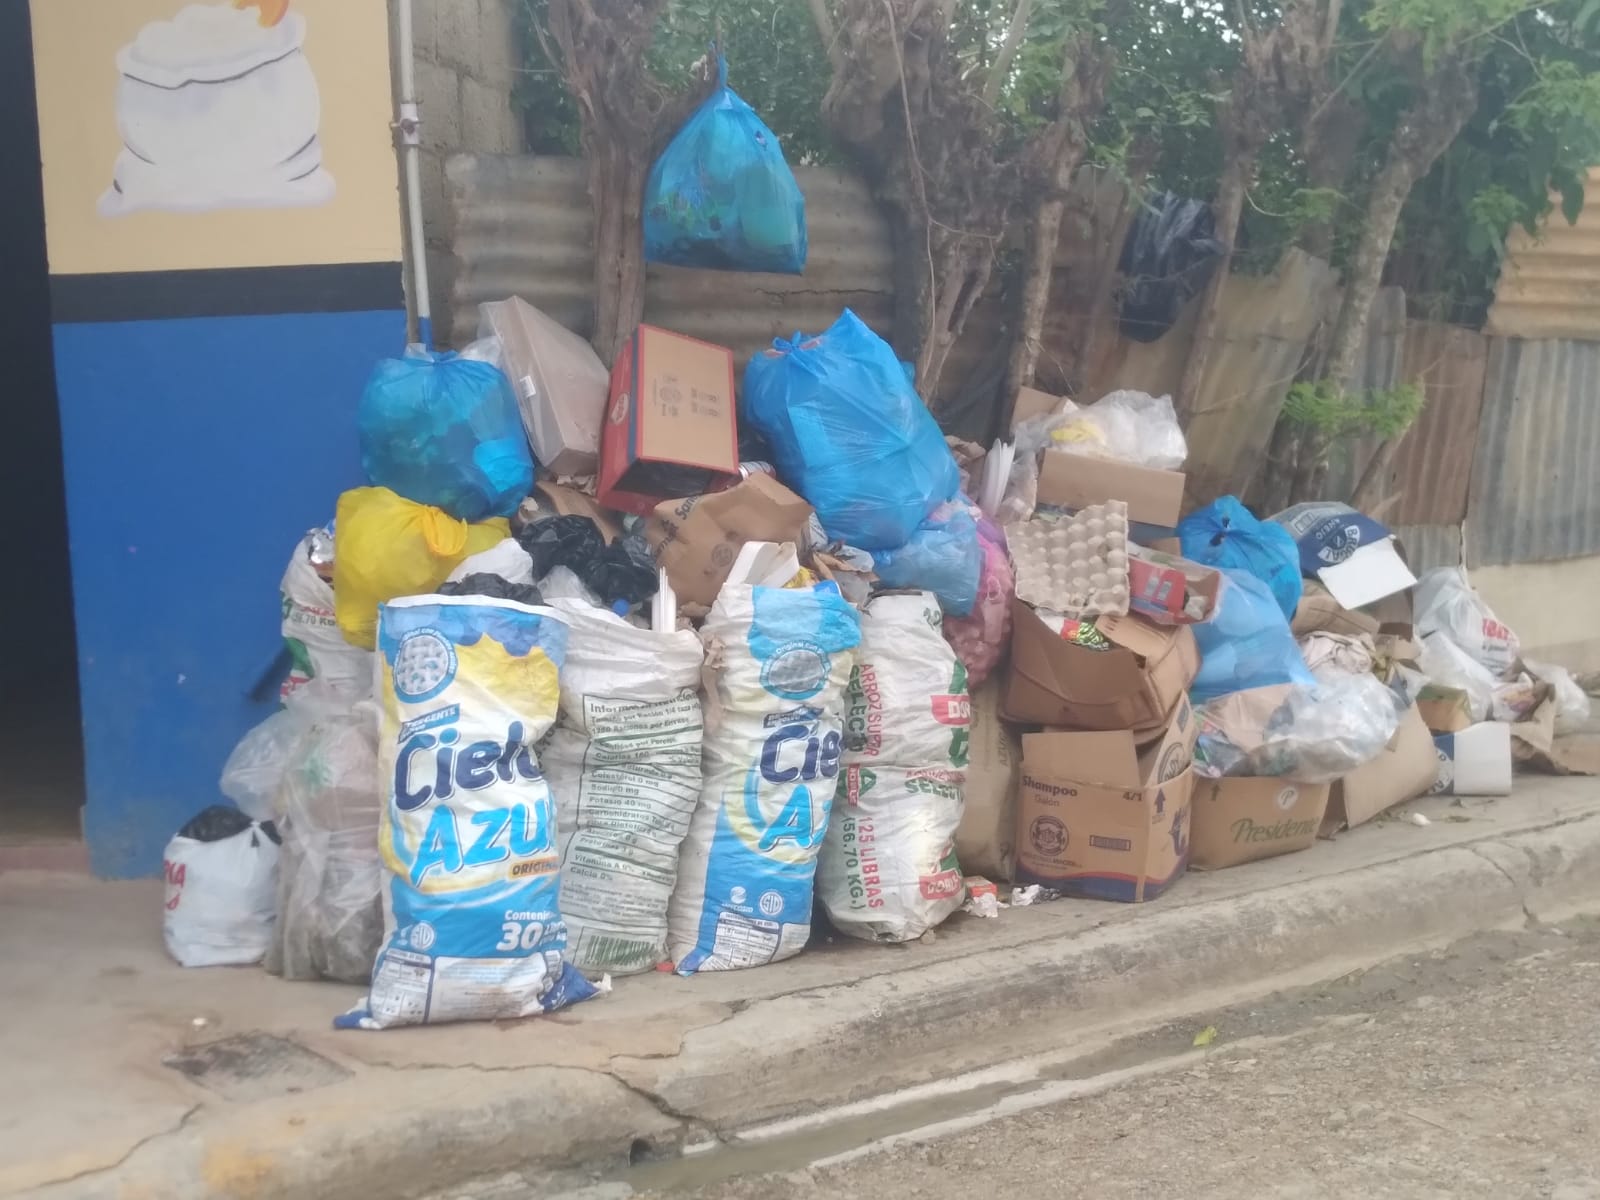 Alcaldía Hato Mayor no recoge basura desde antes de Fiona en varios sectores; ciudadanos temen por brote dengue